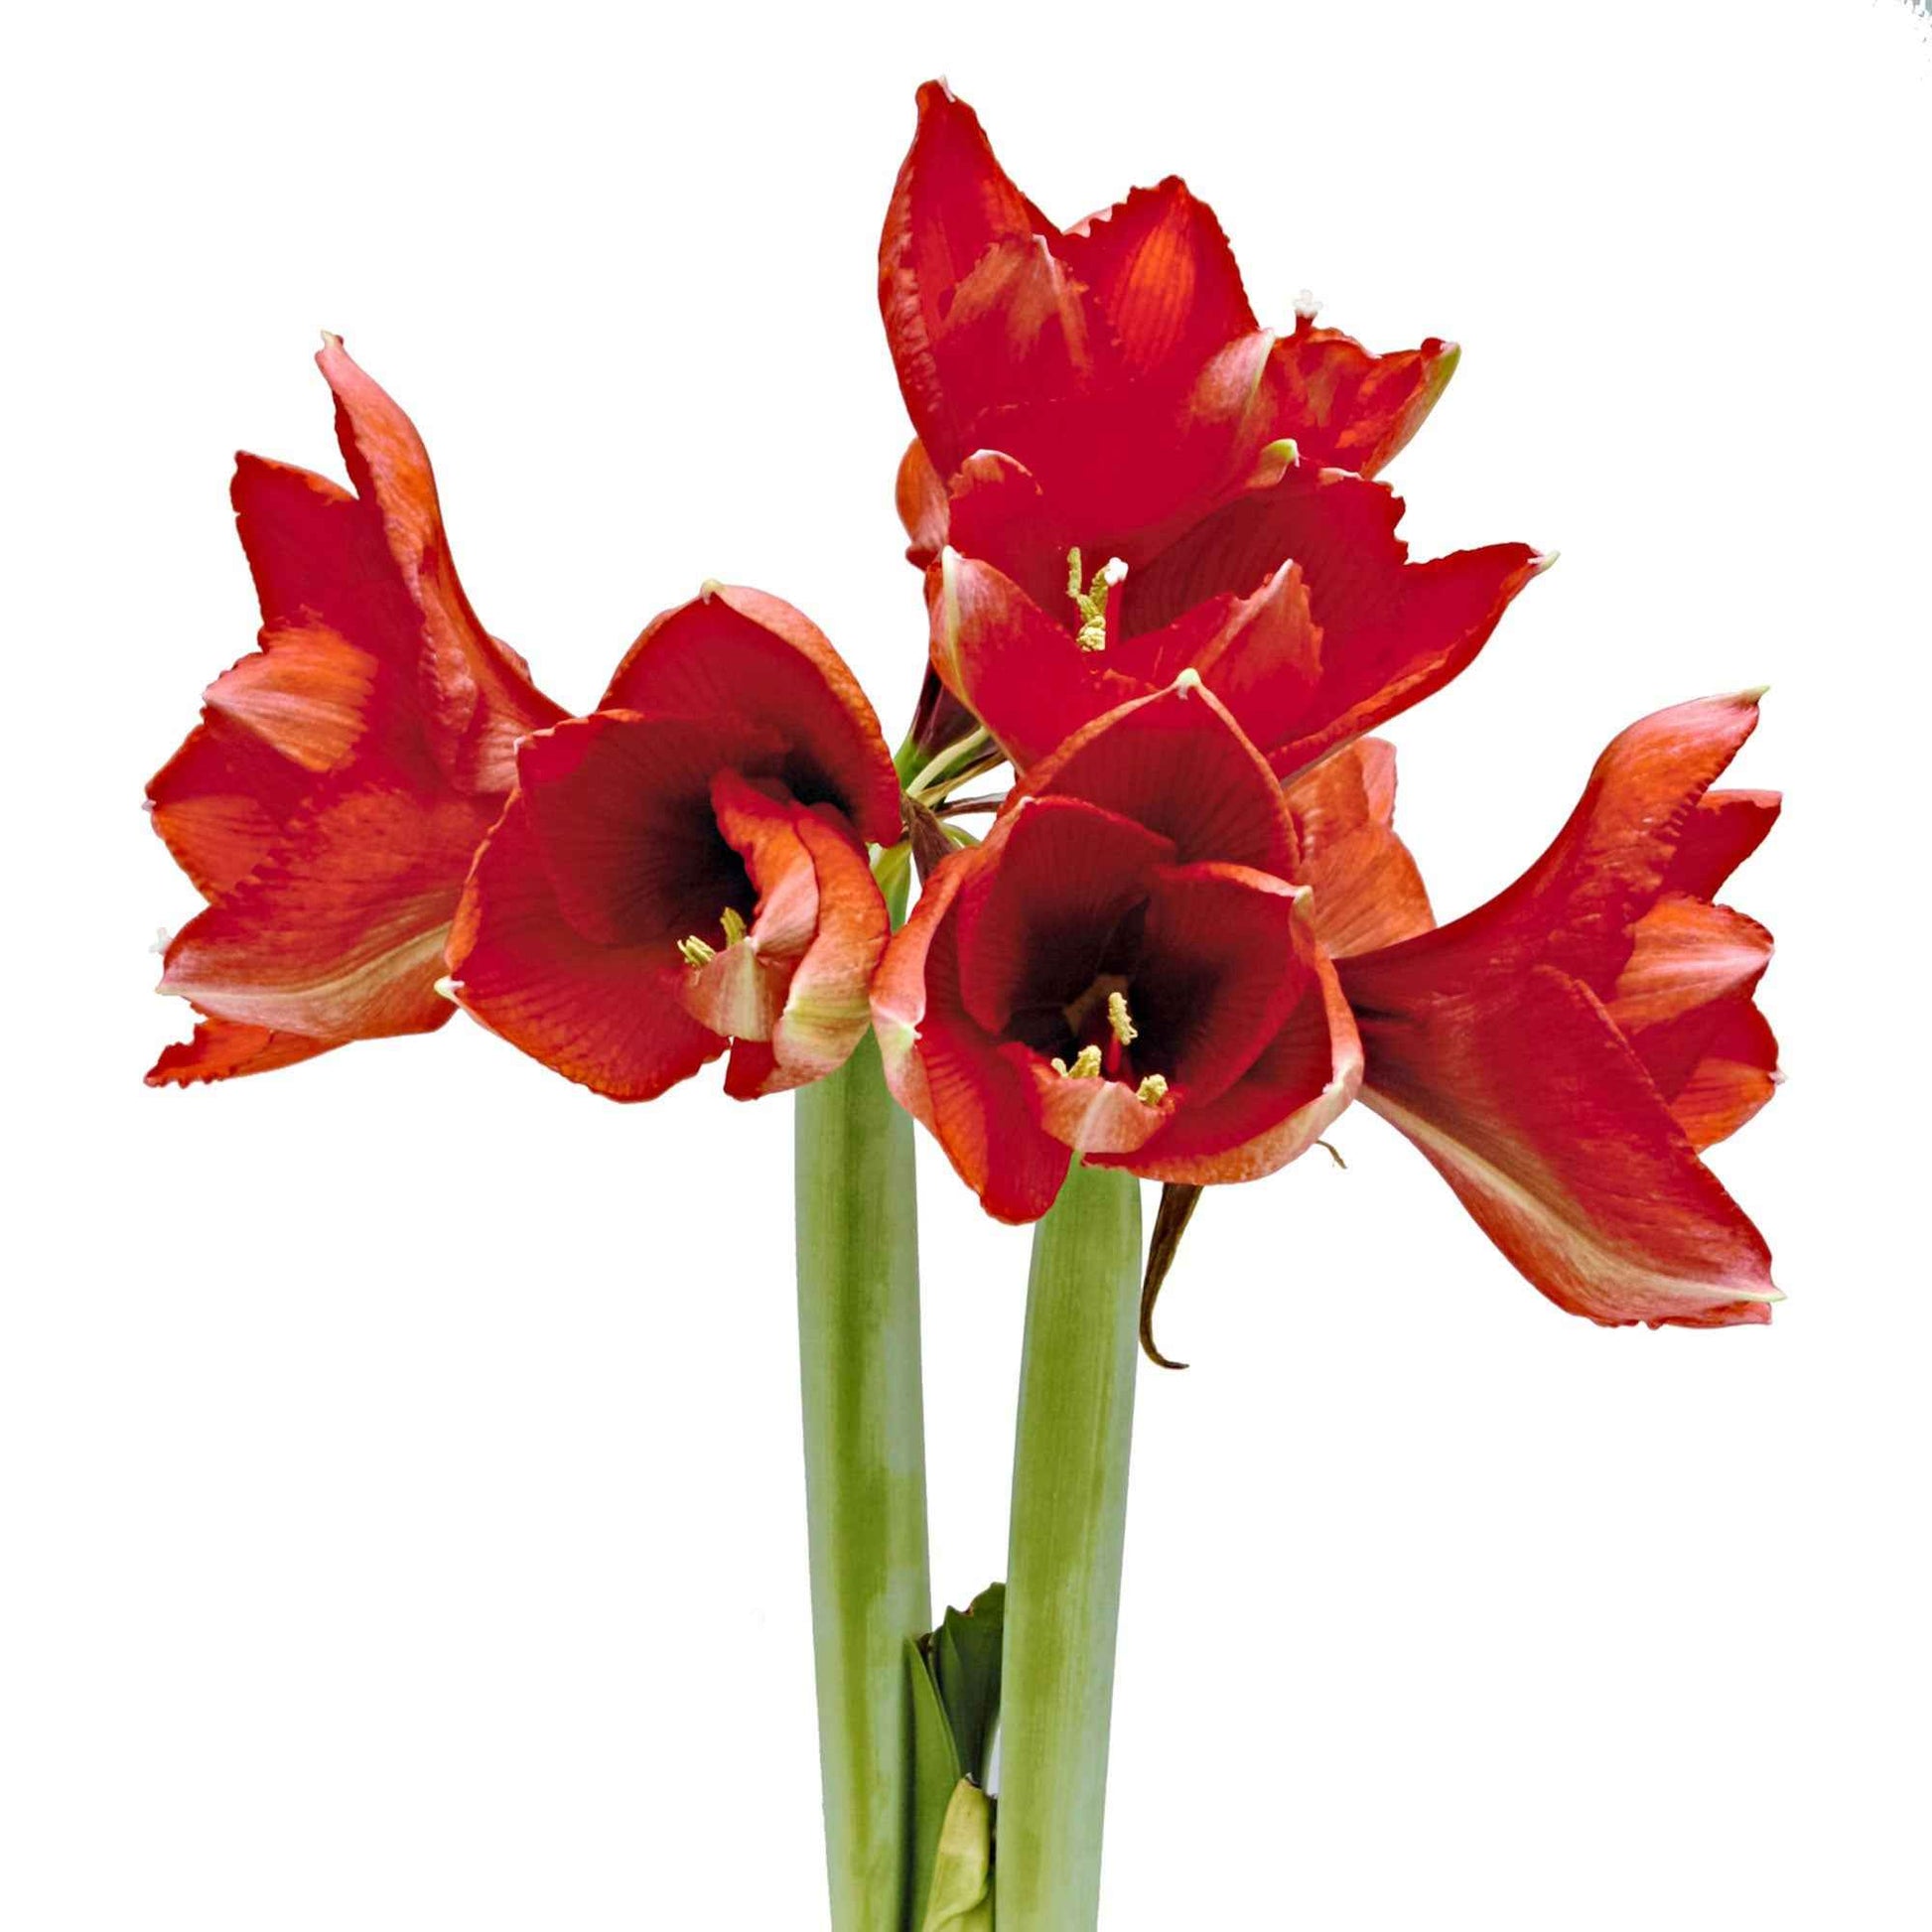 Wax Amaryllis 'Parfumz' kirschen - Alle beliebten Blumenzwiebeln